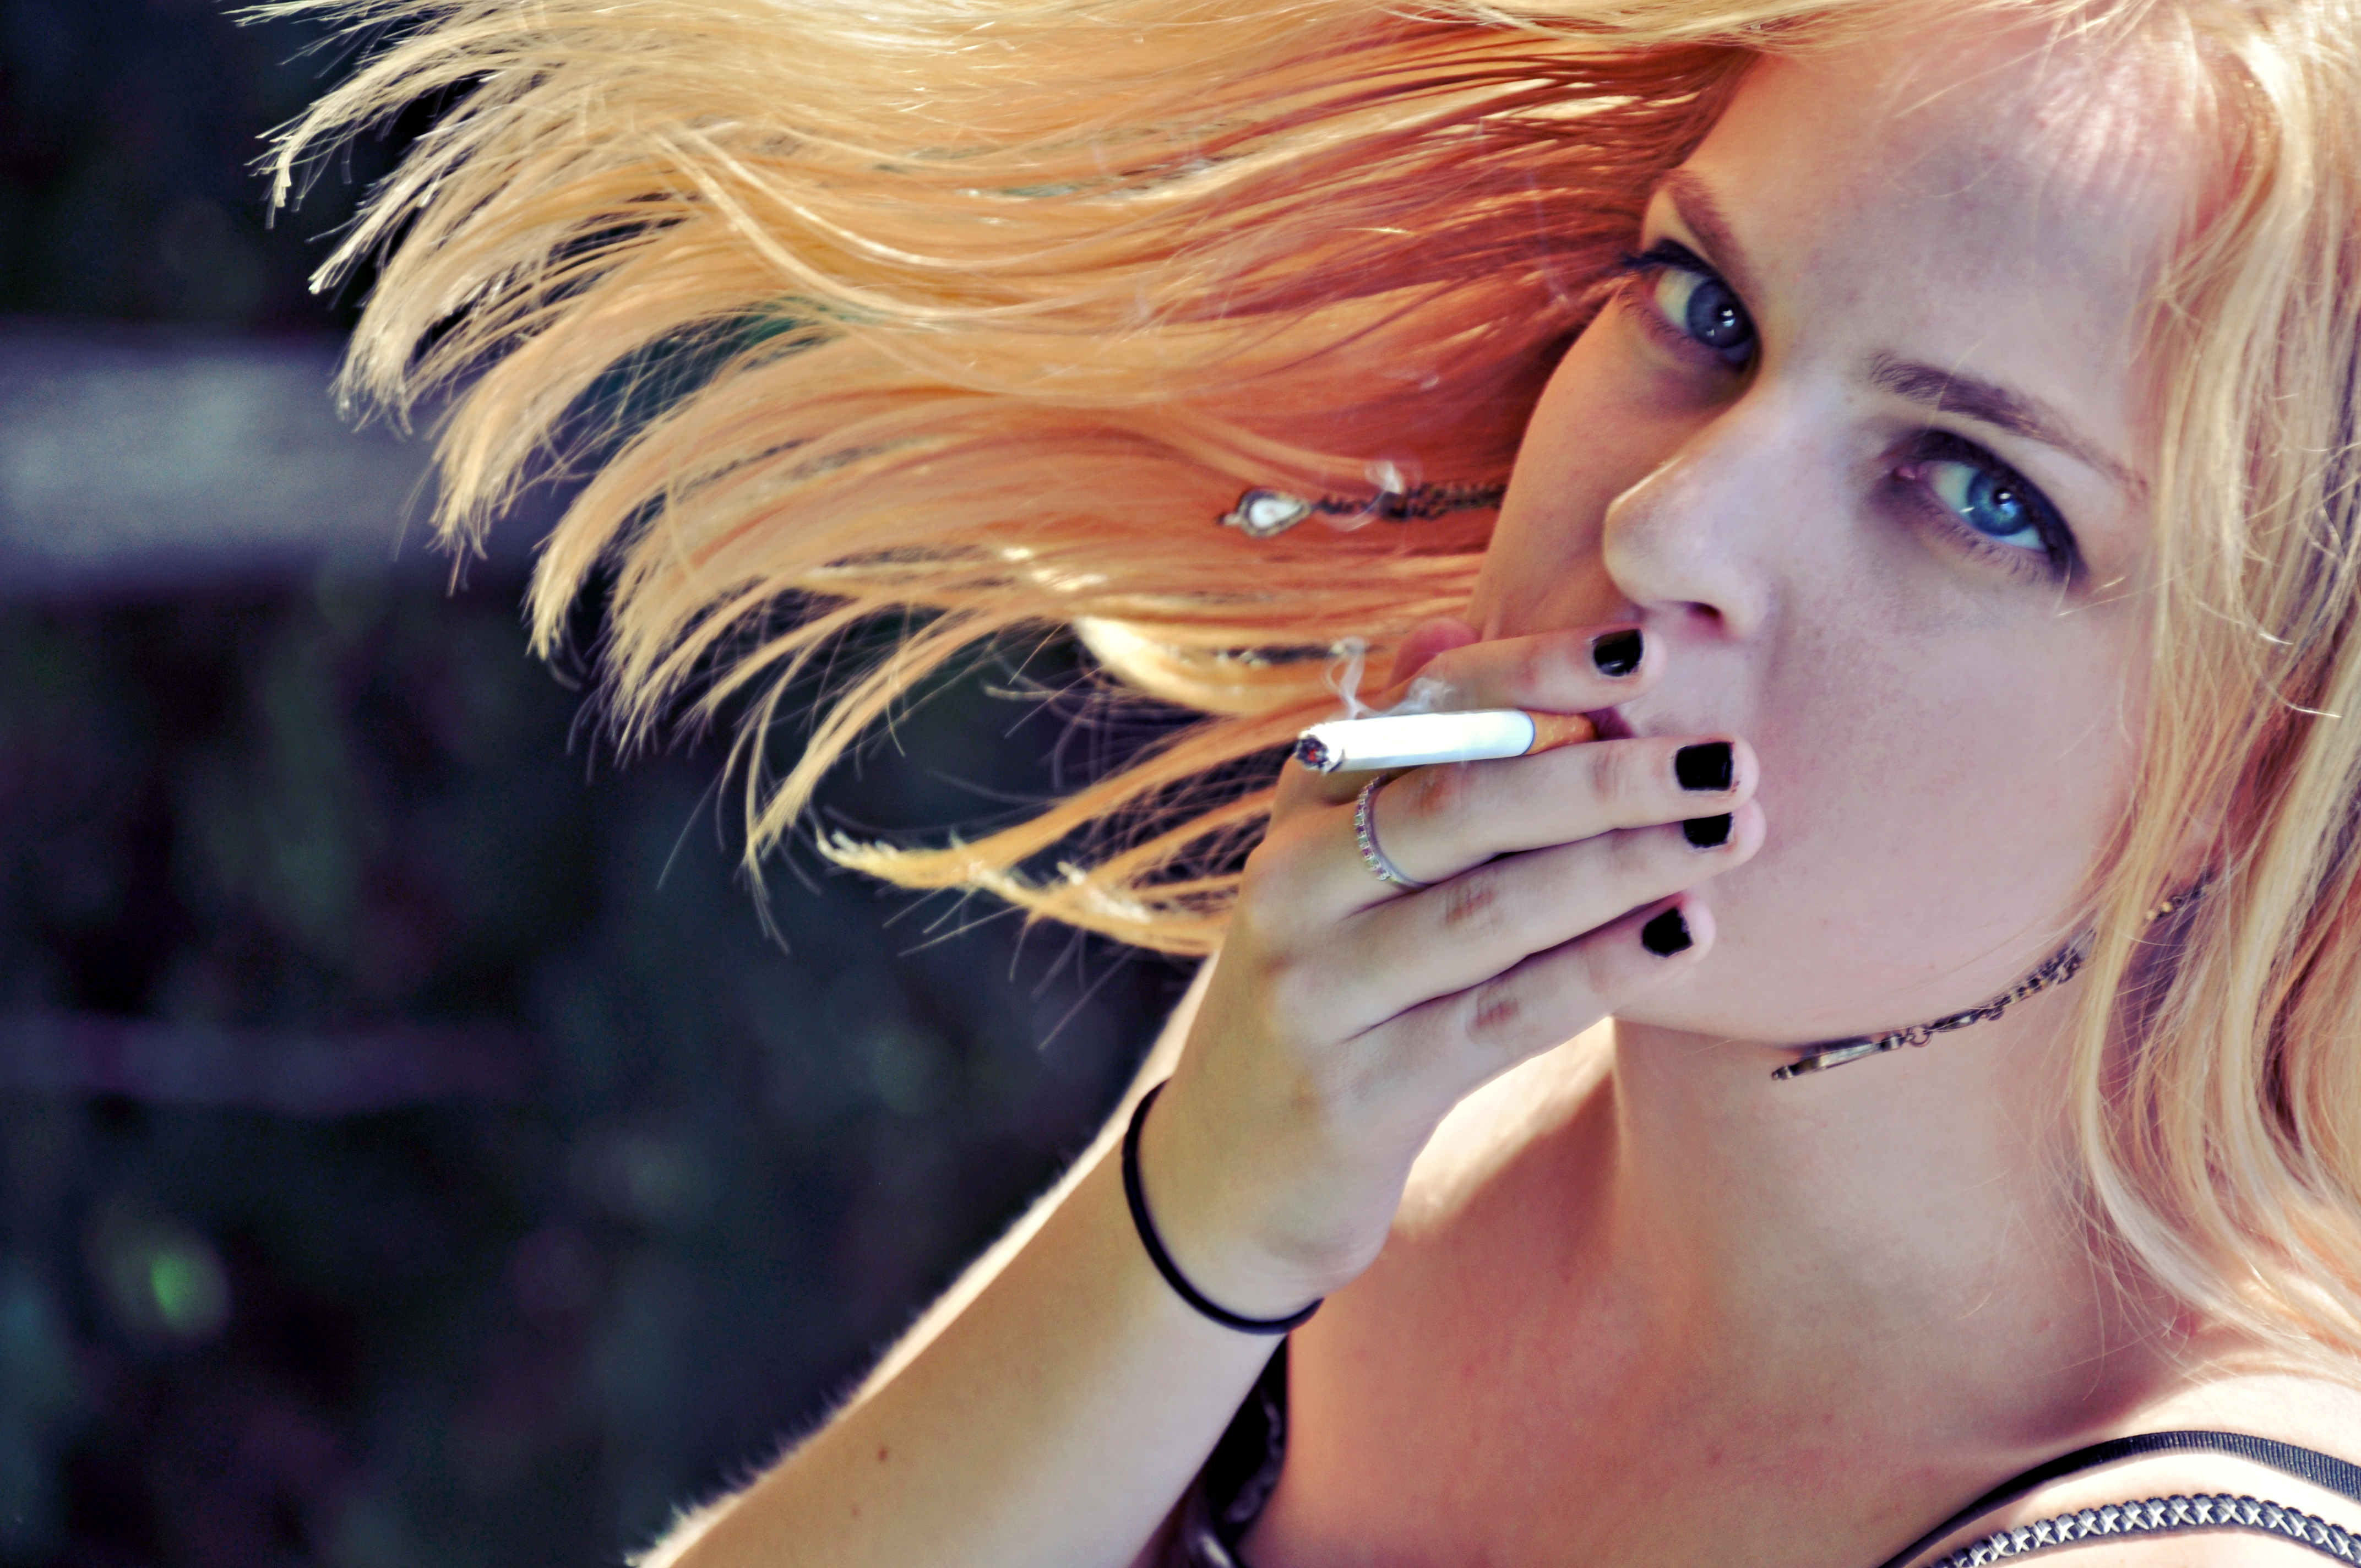 blondes, women, smoking, blue eyes, nails - desktop wallpaper